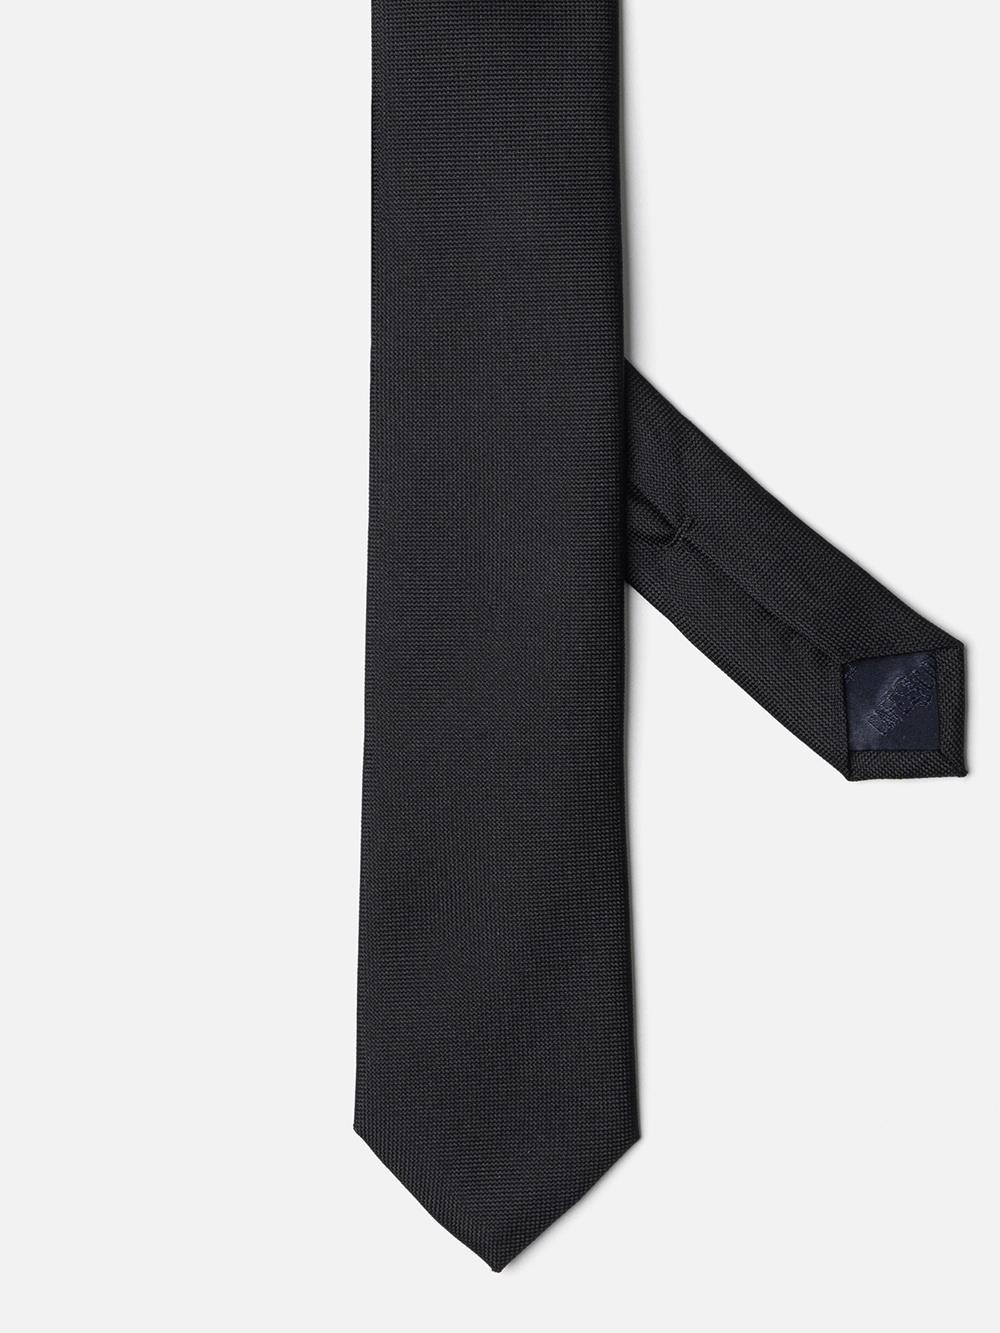 Cravate slim en micro natté de soie noire